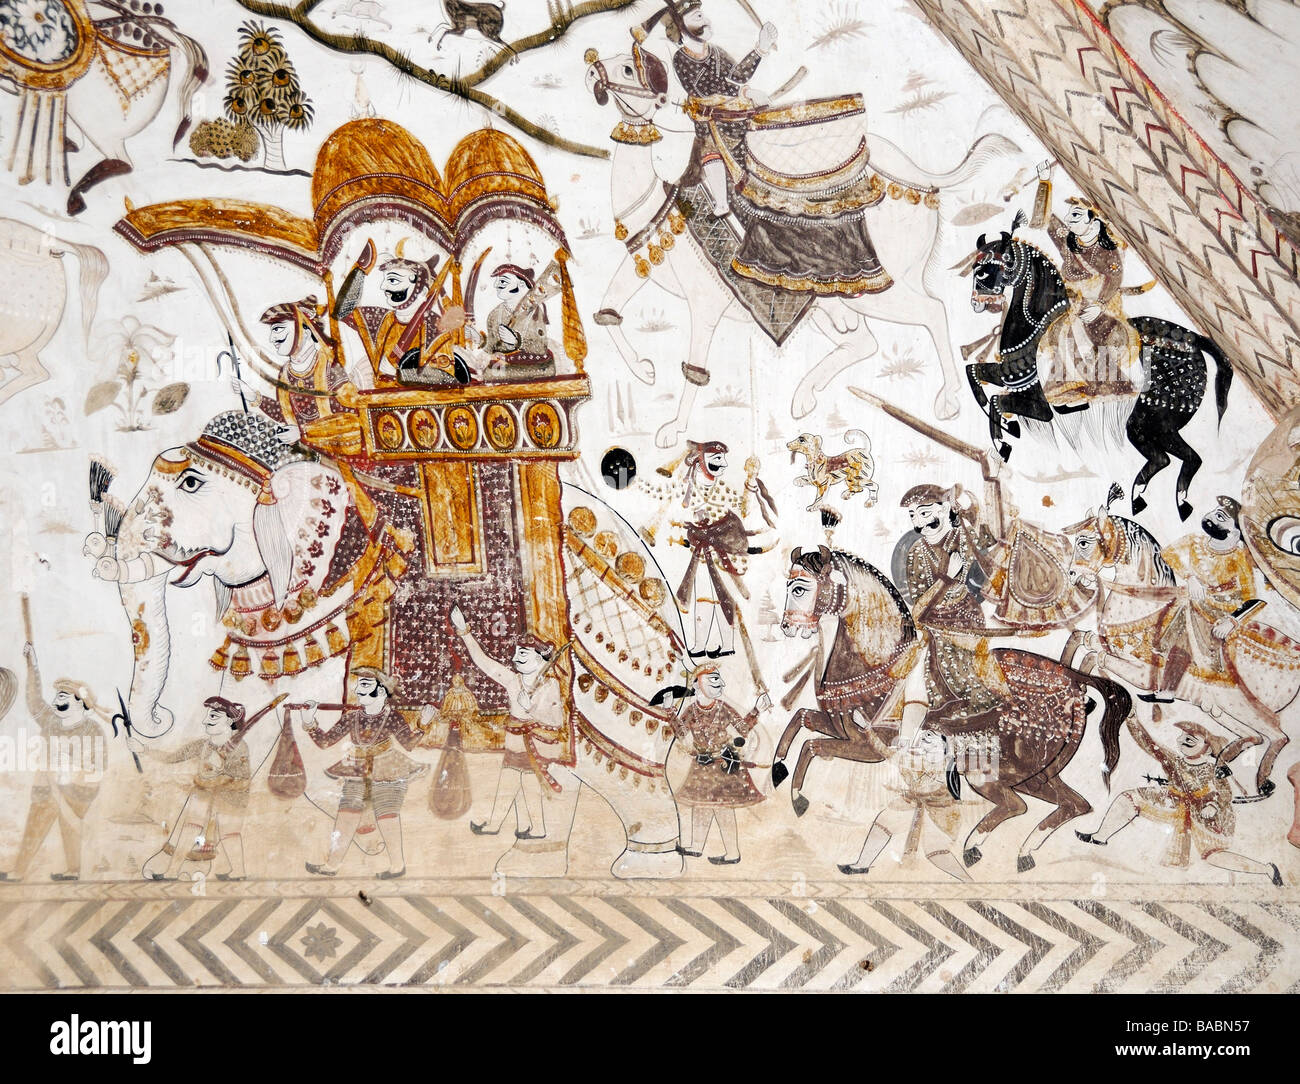 Peinture murale de guerriers à pied et l'être entraîné au combat par un maharadjah à dos d'éléphant Banque D'Images